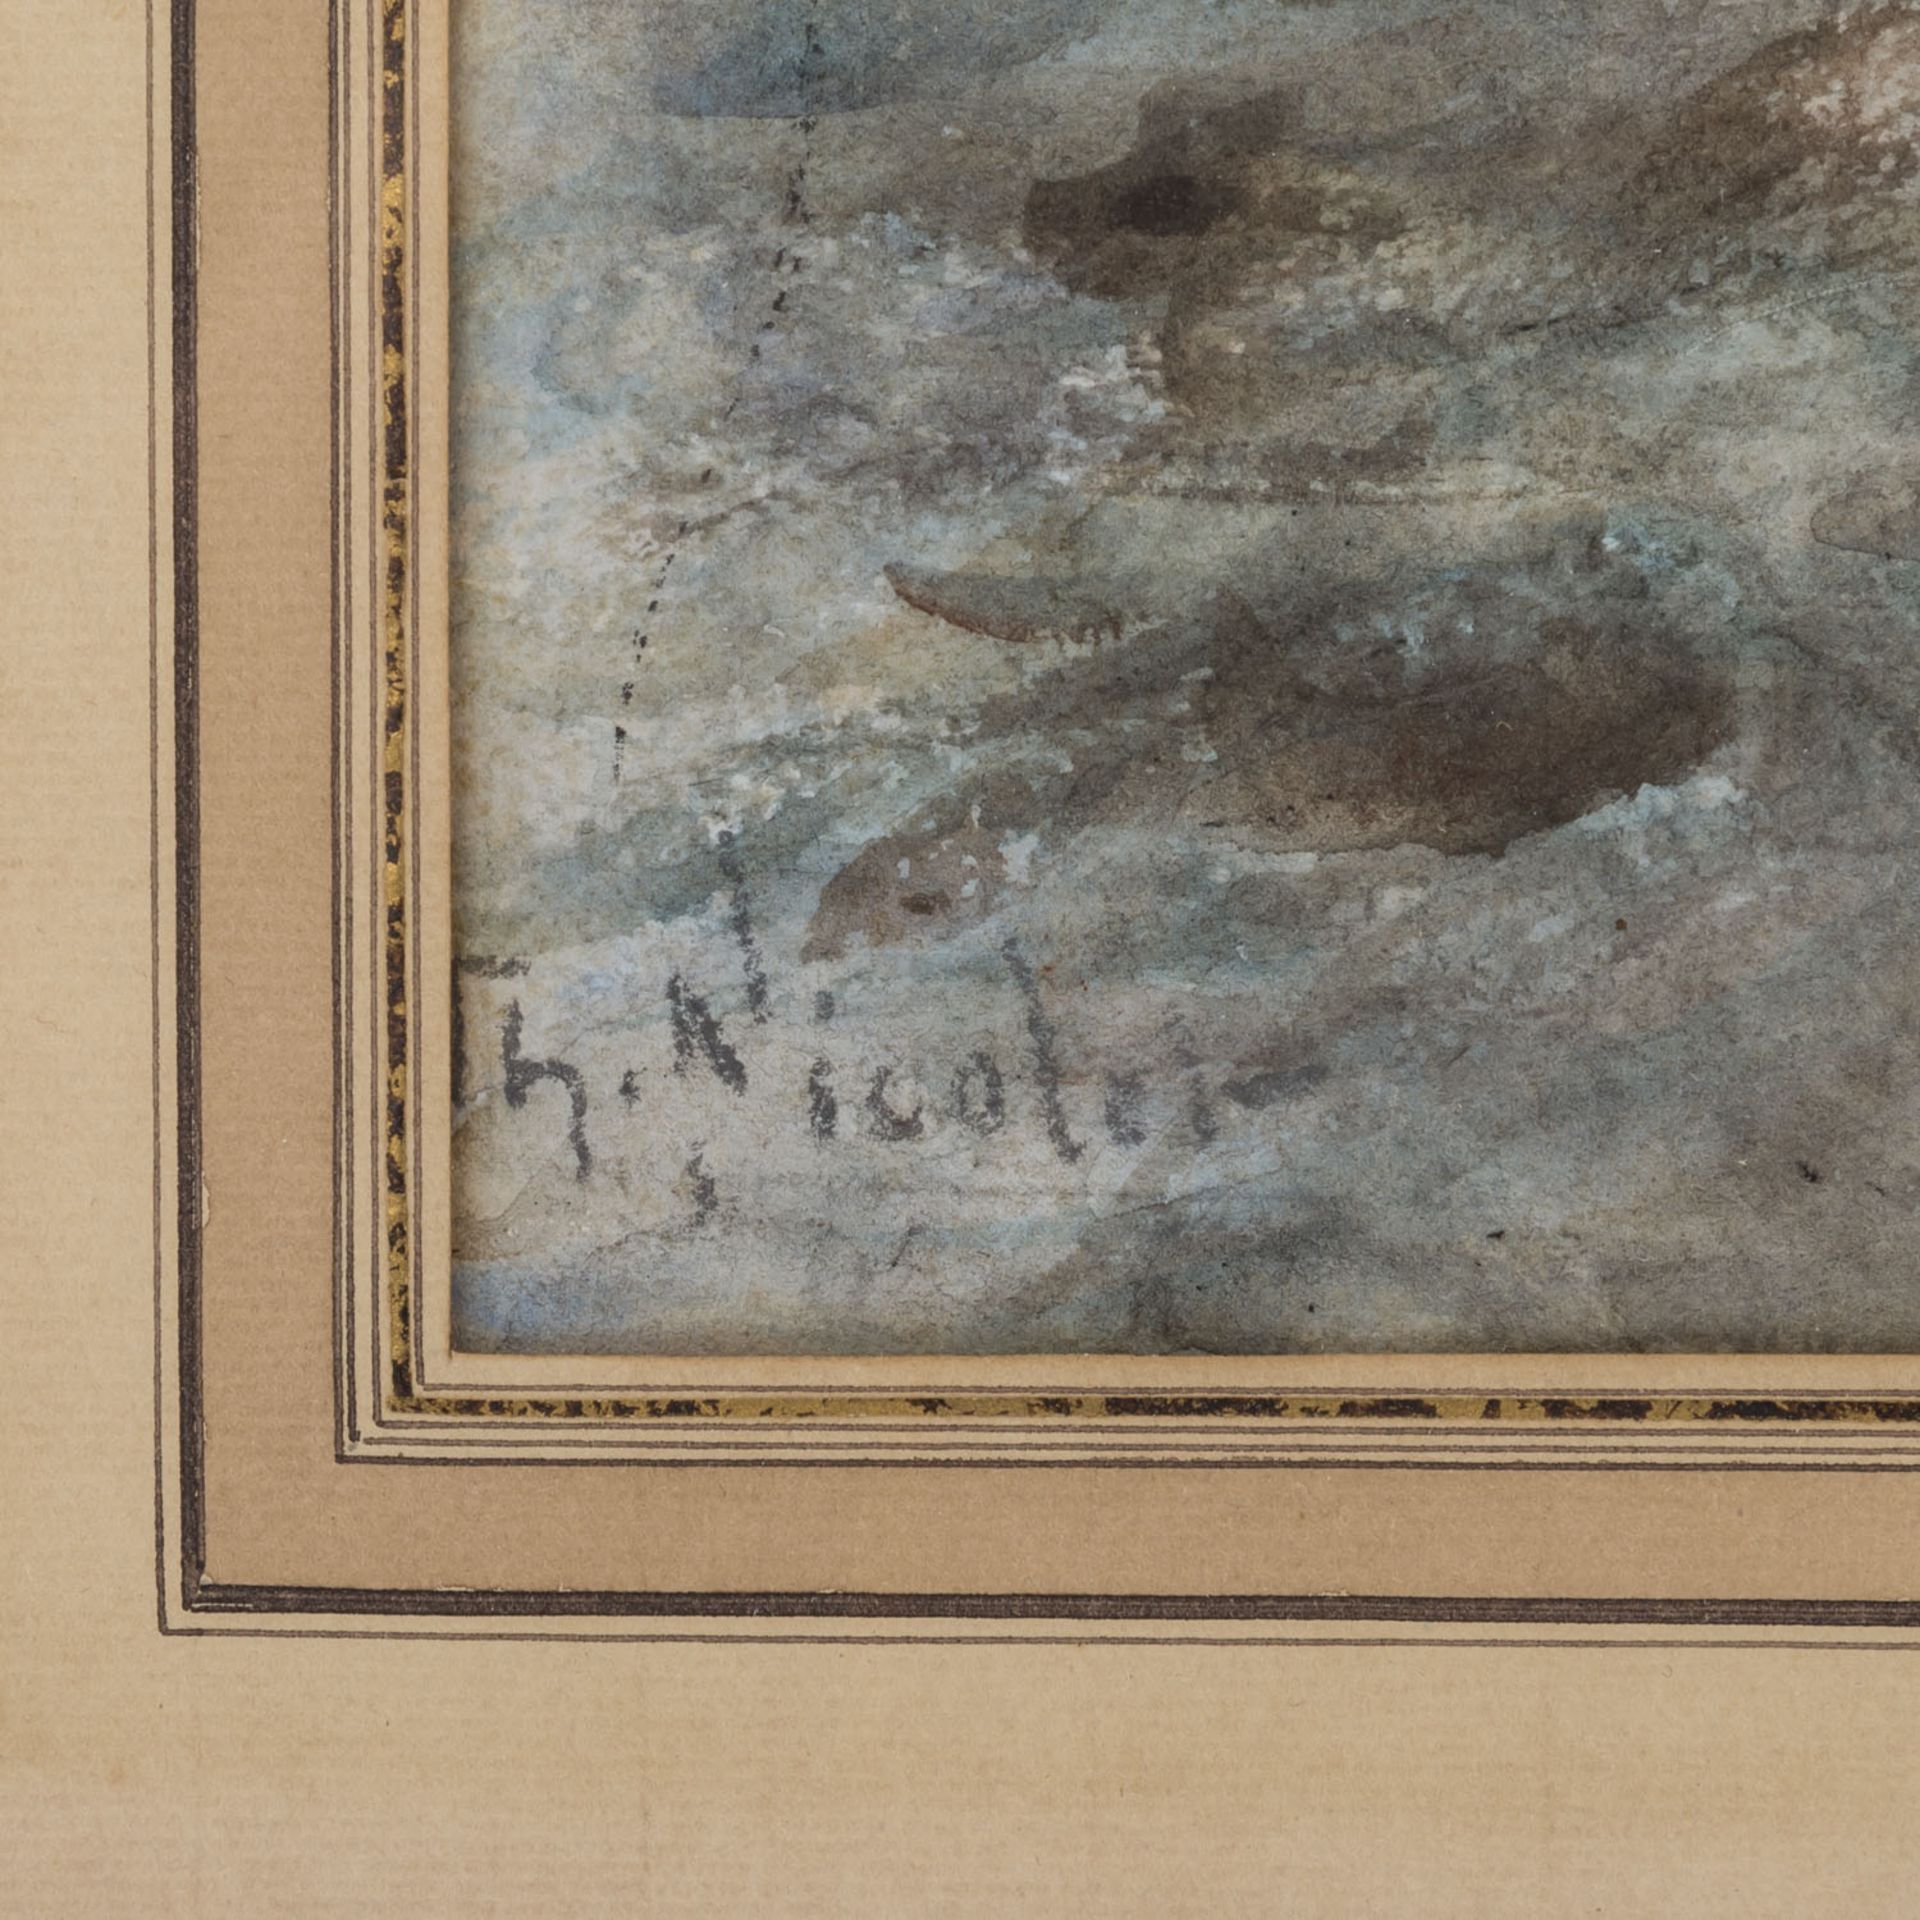 NICOLET, THÈOPHILE (19./20. Jh.) "Bach im Wald"Aquarell auf Papier, unten links signiert "Th. - Bild 3 aus 4